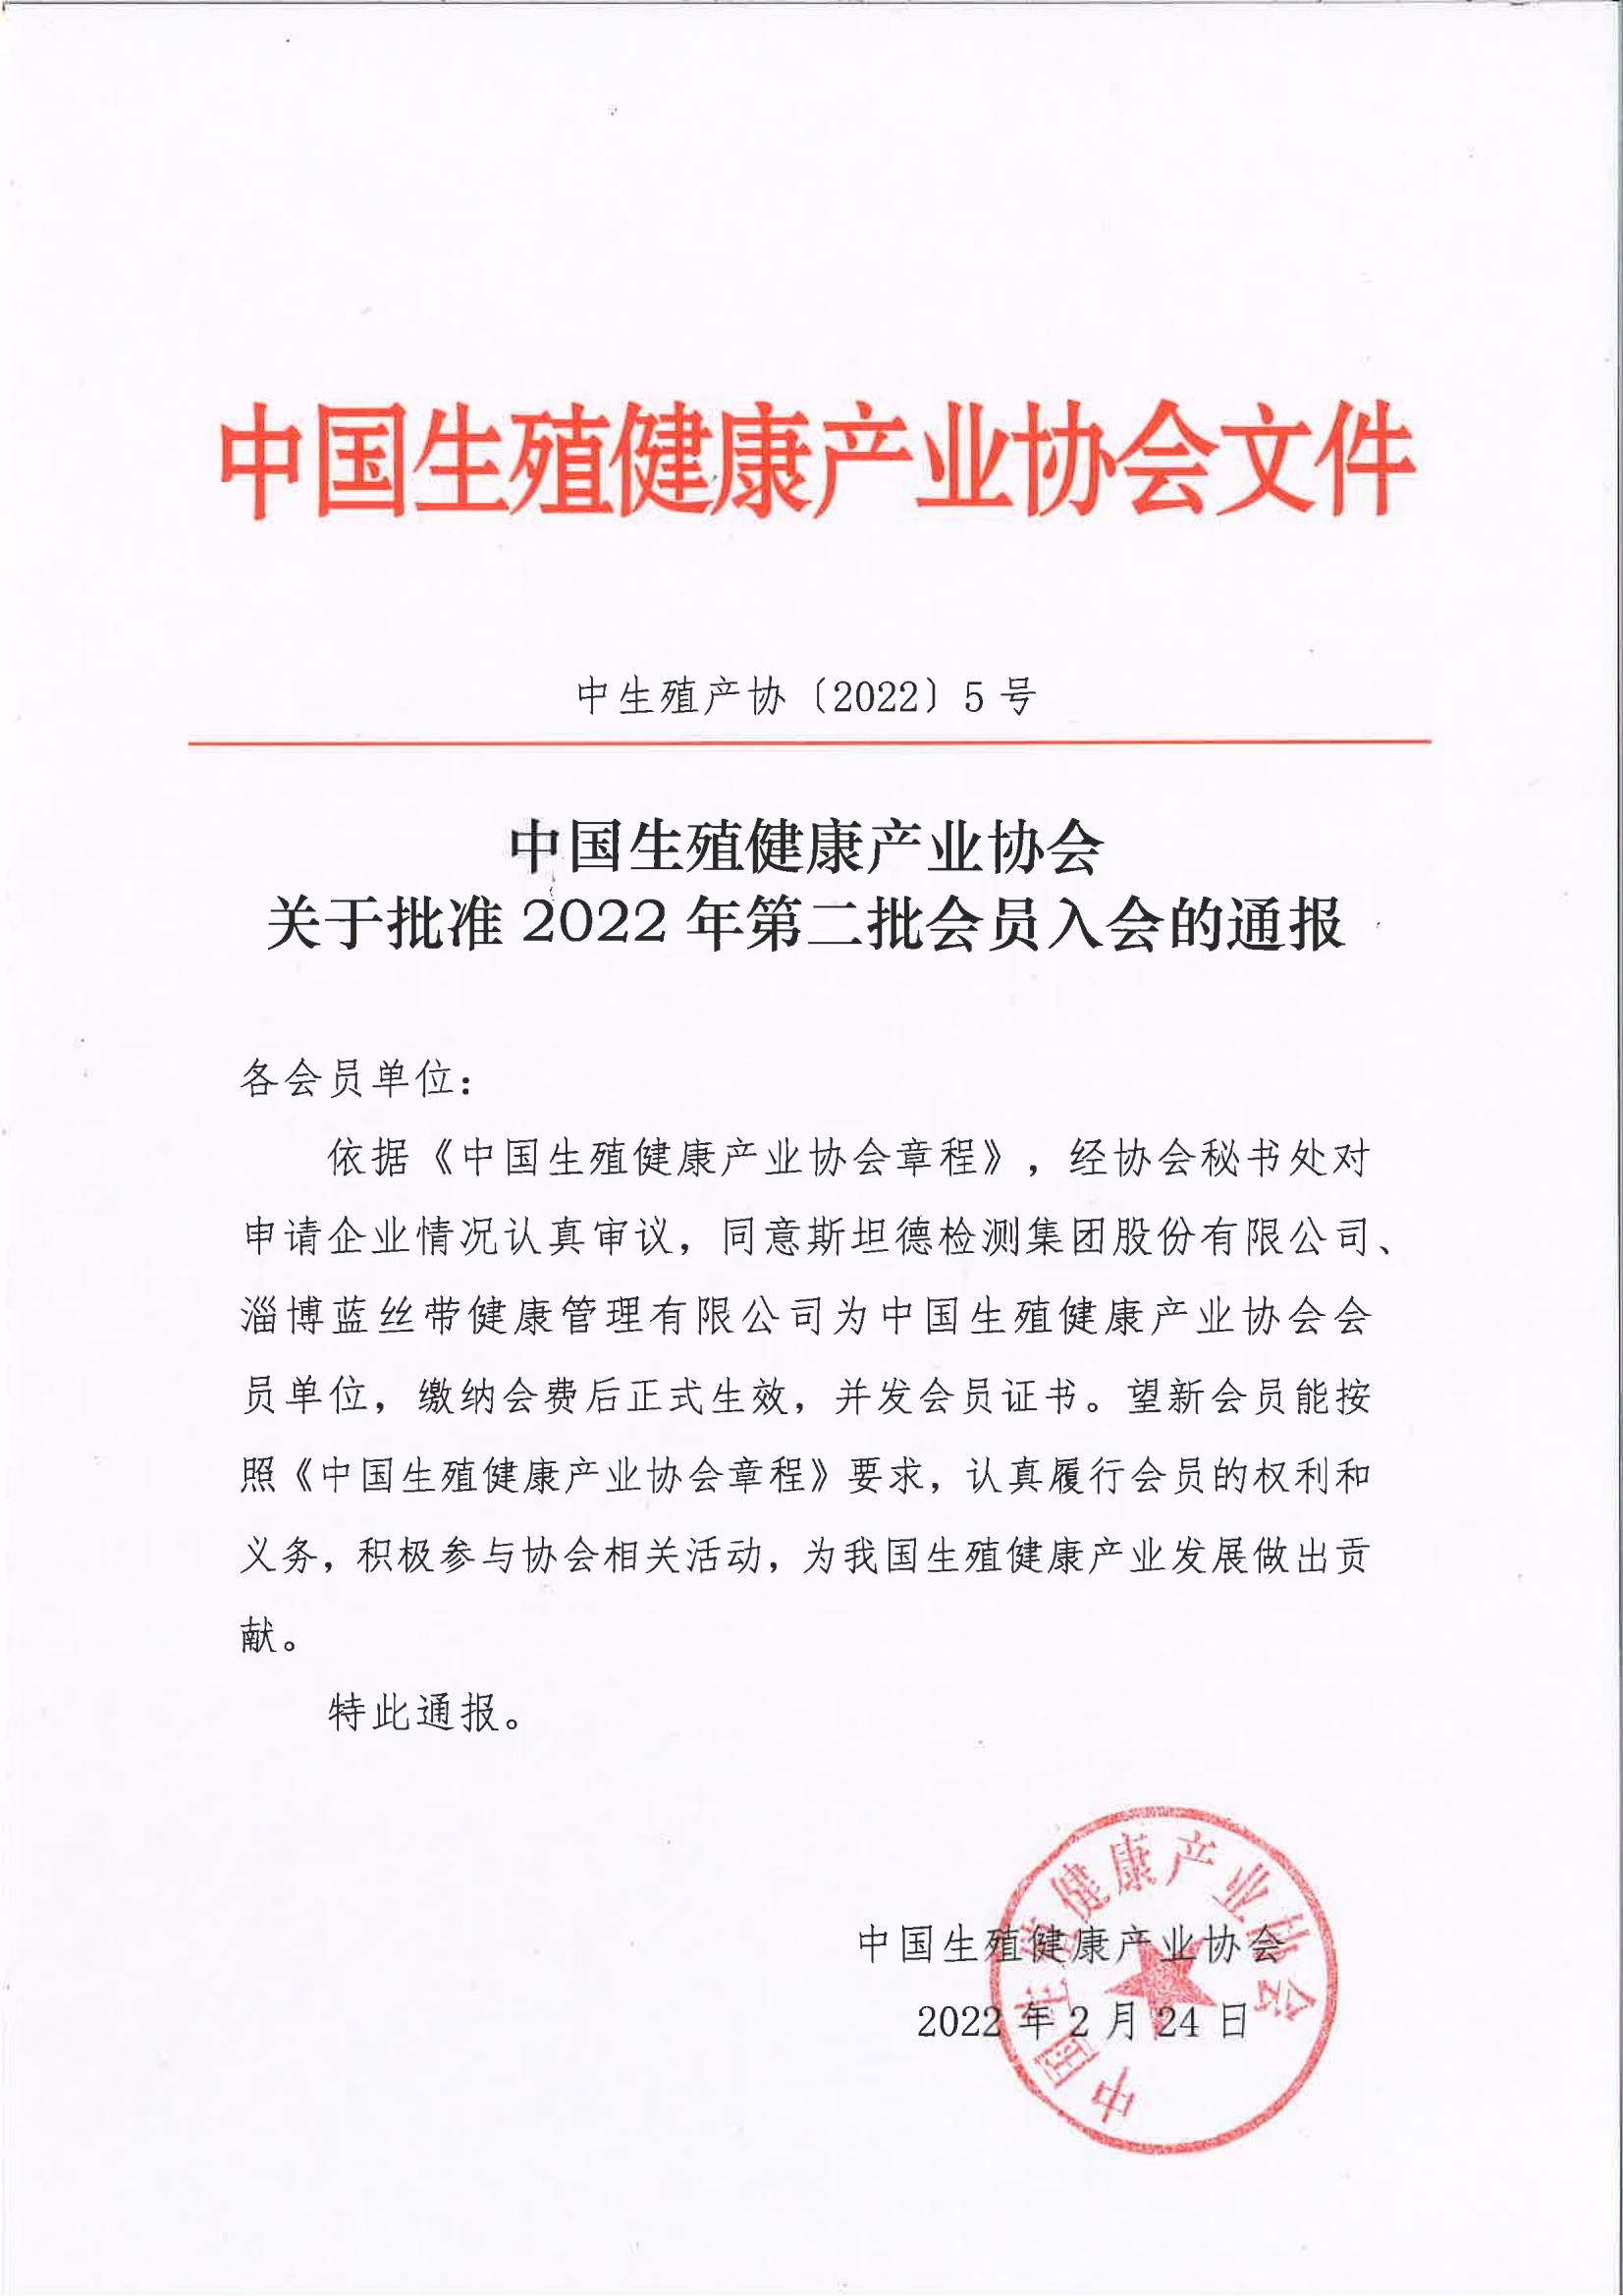 中国生殖健康产业协会关于批准2022年第二批会员单位的通报